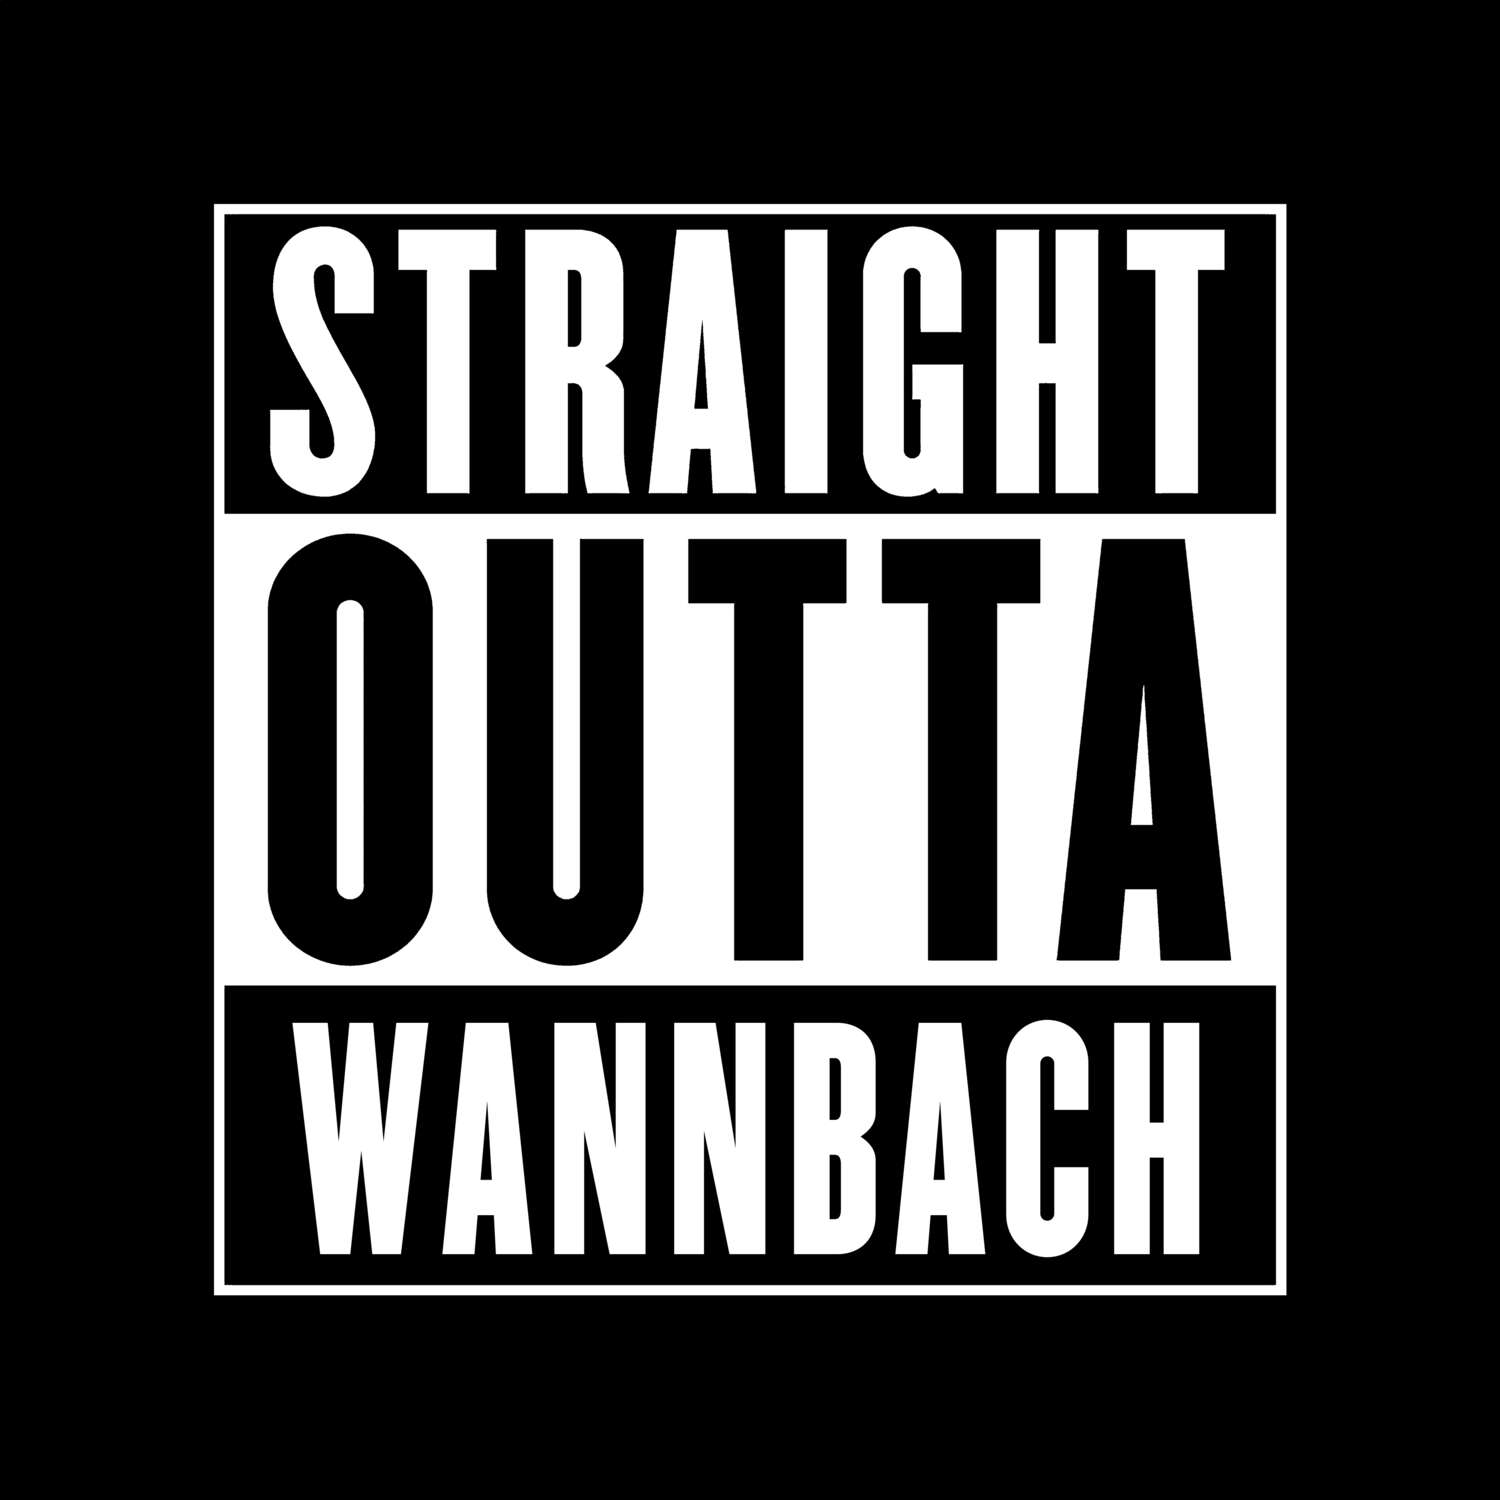 Wannbach T-Shirt »Straight Outta«